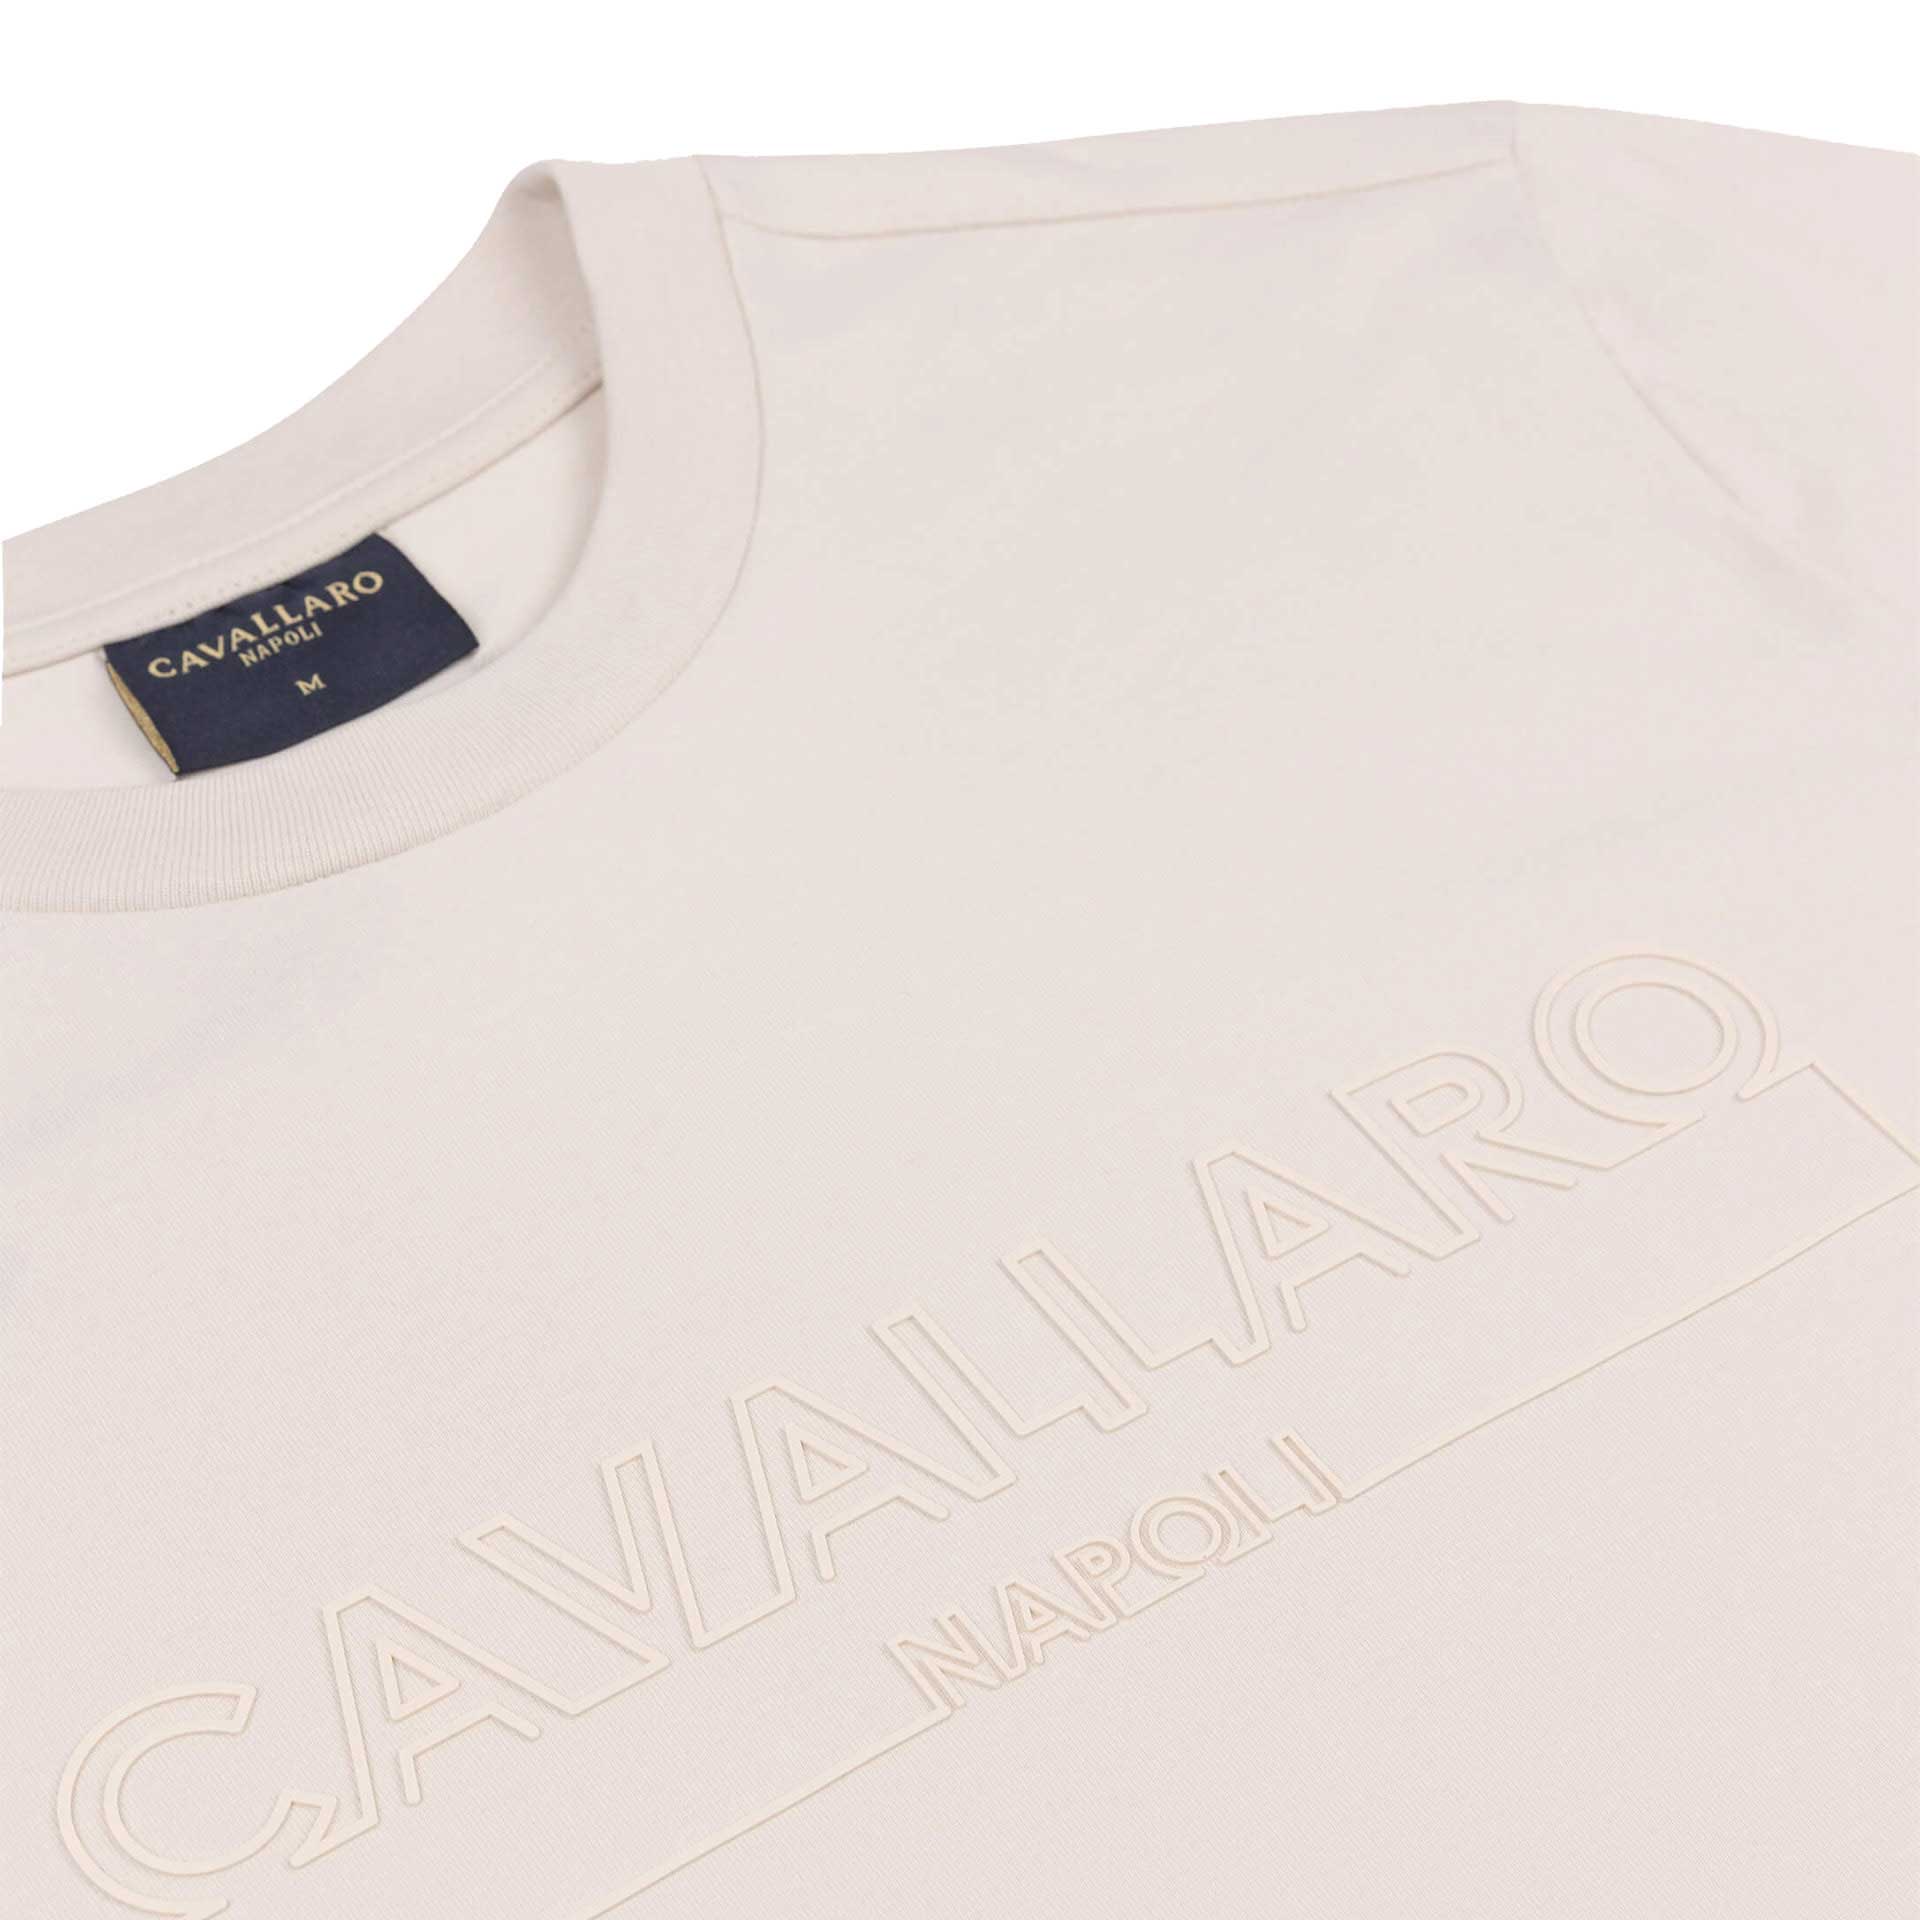 Cavallaro Napoli T-shirt Beciano  3